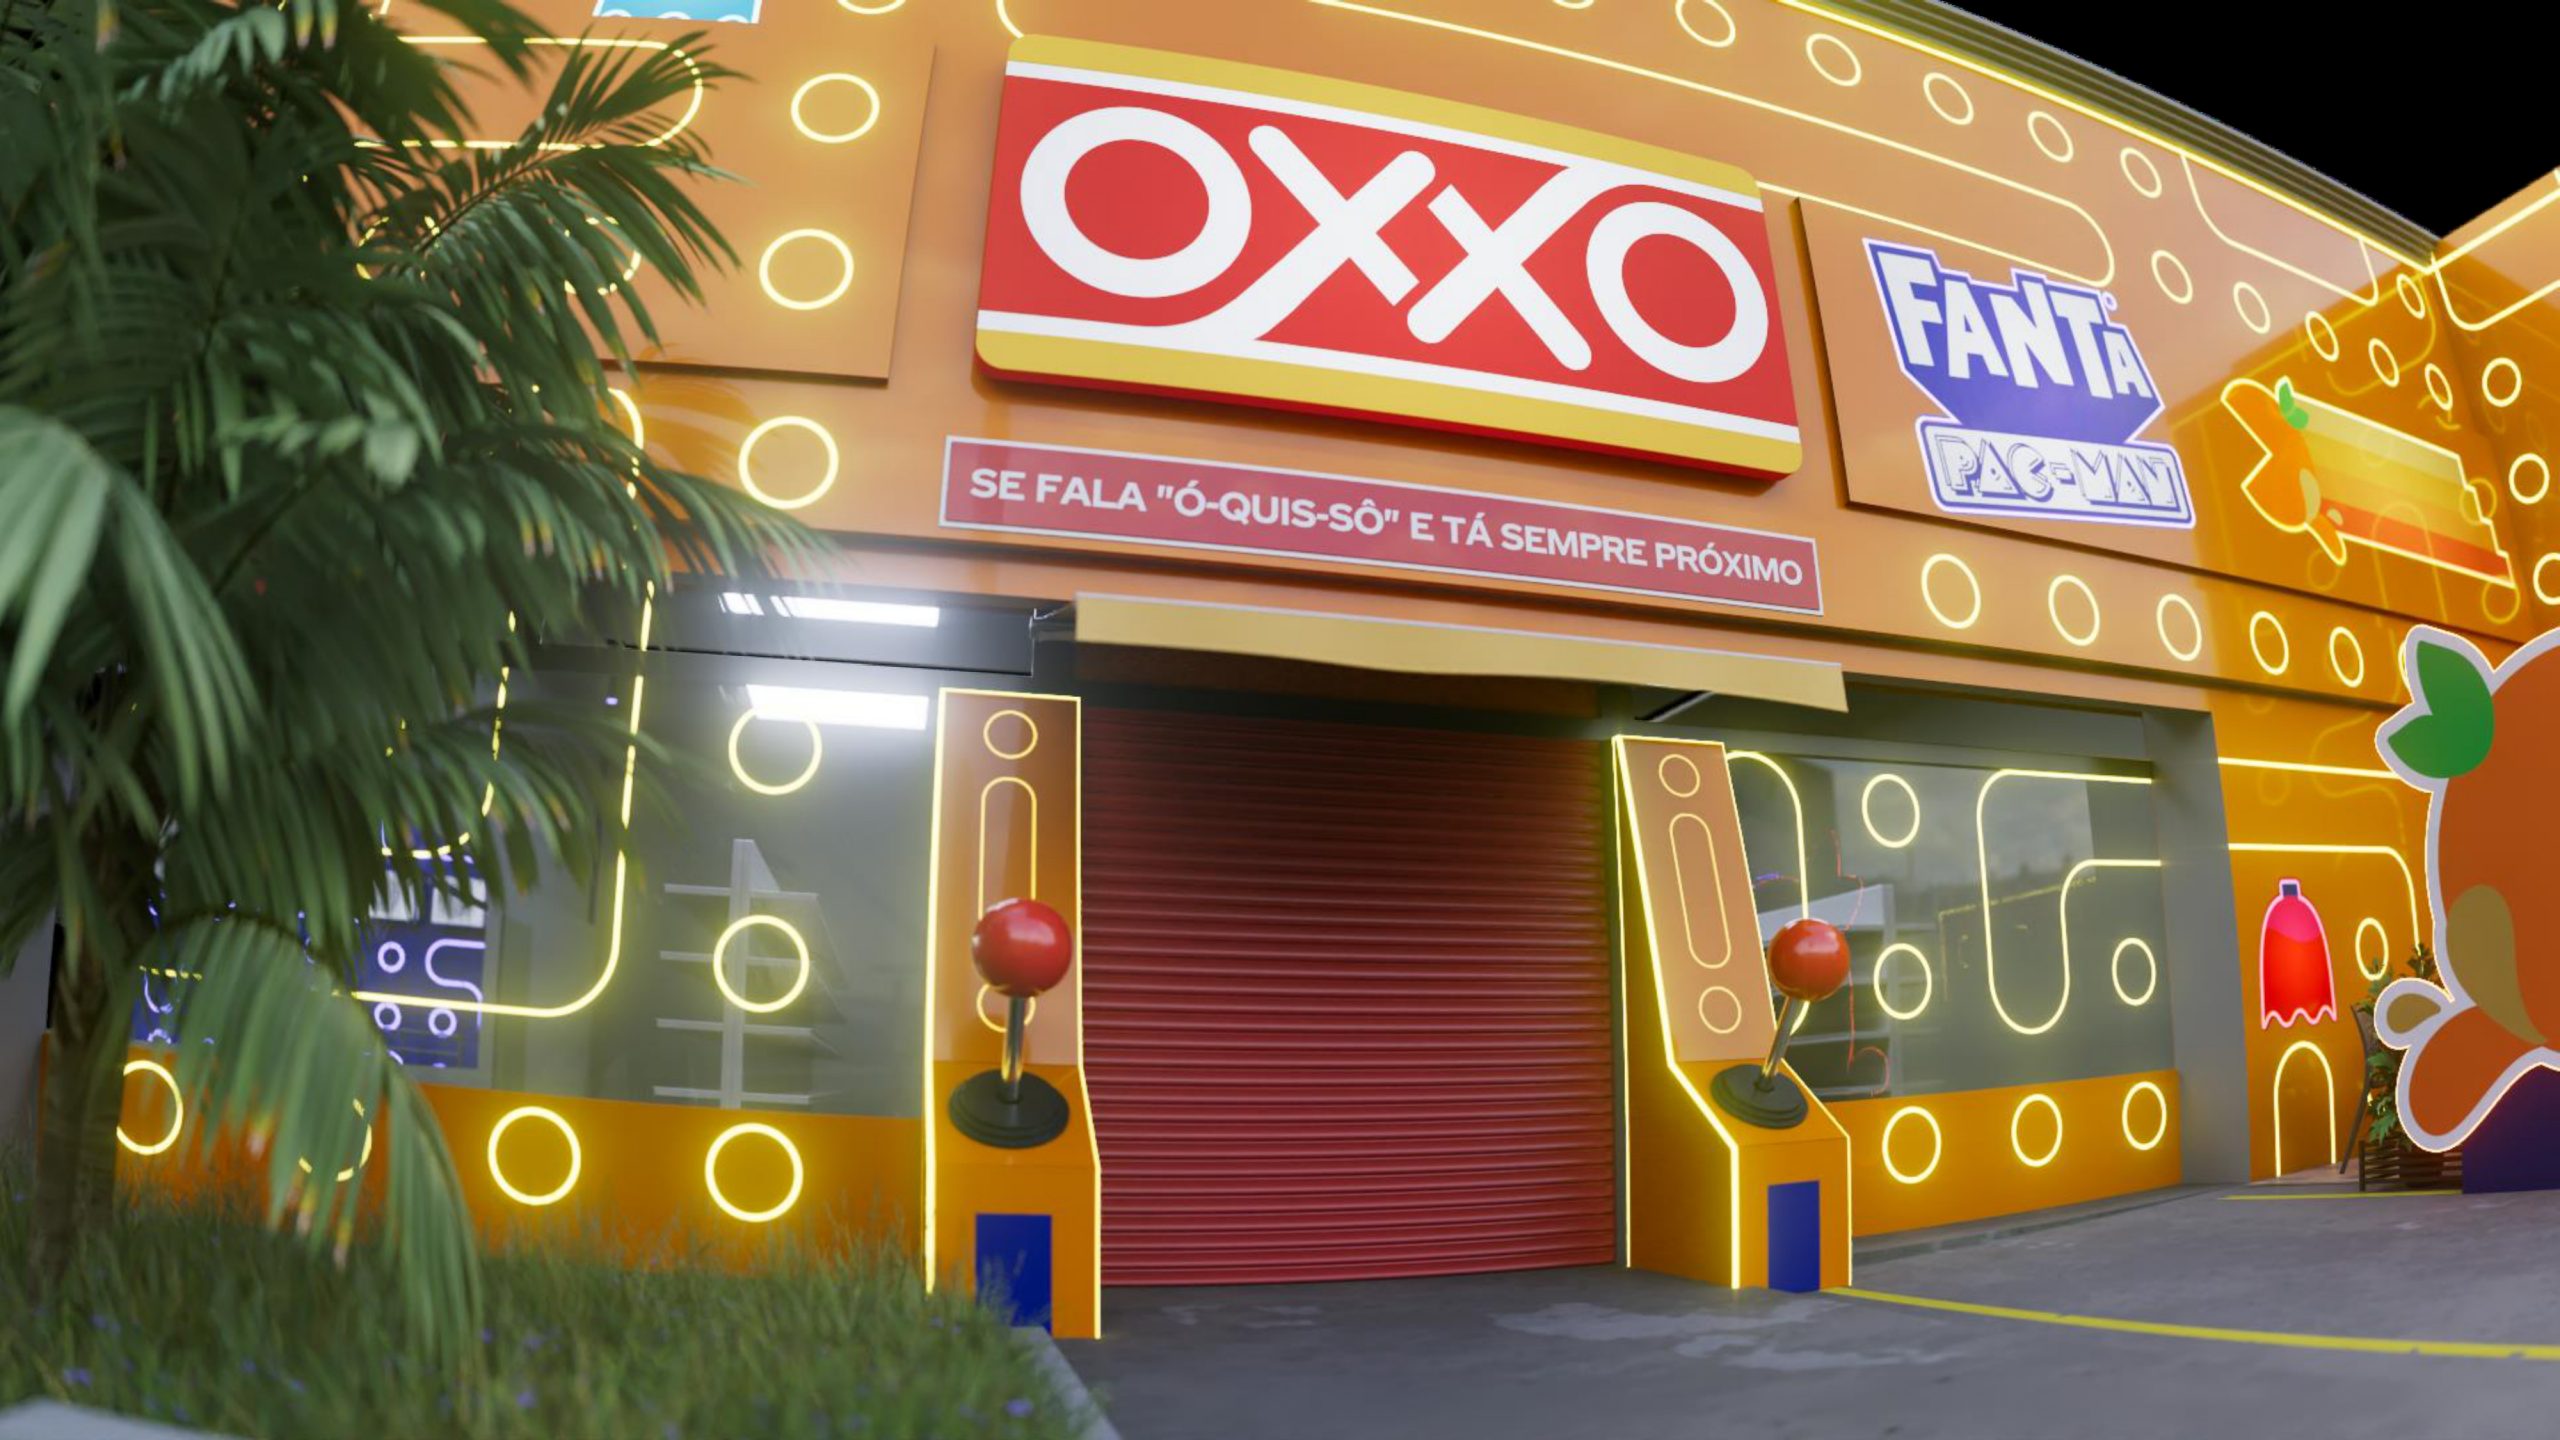 Oxxo transforma loja em máquina de videogame para o lançamento da Fanta Pac-Man - Mercado e Consumo